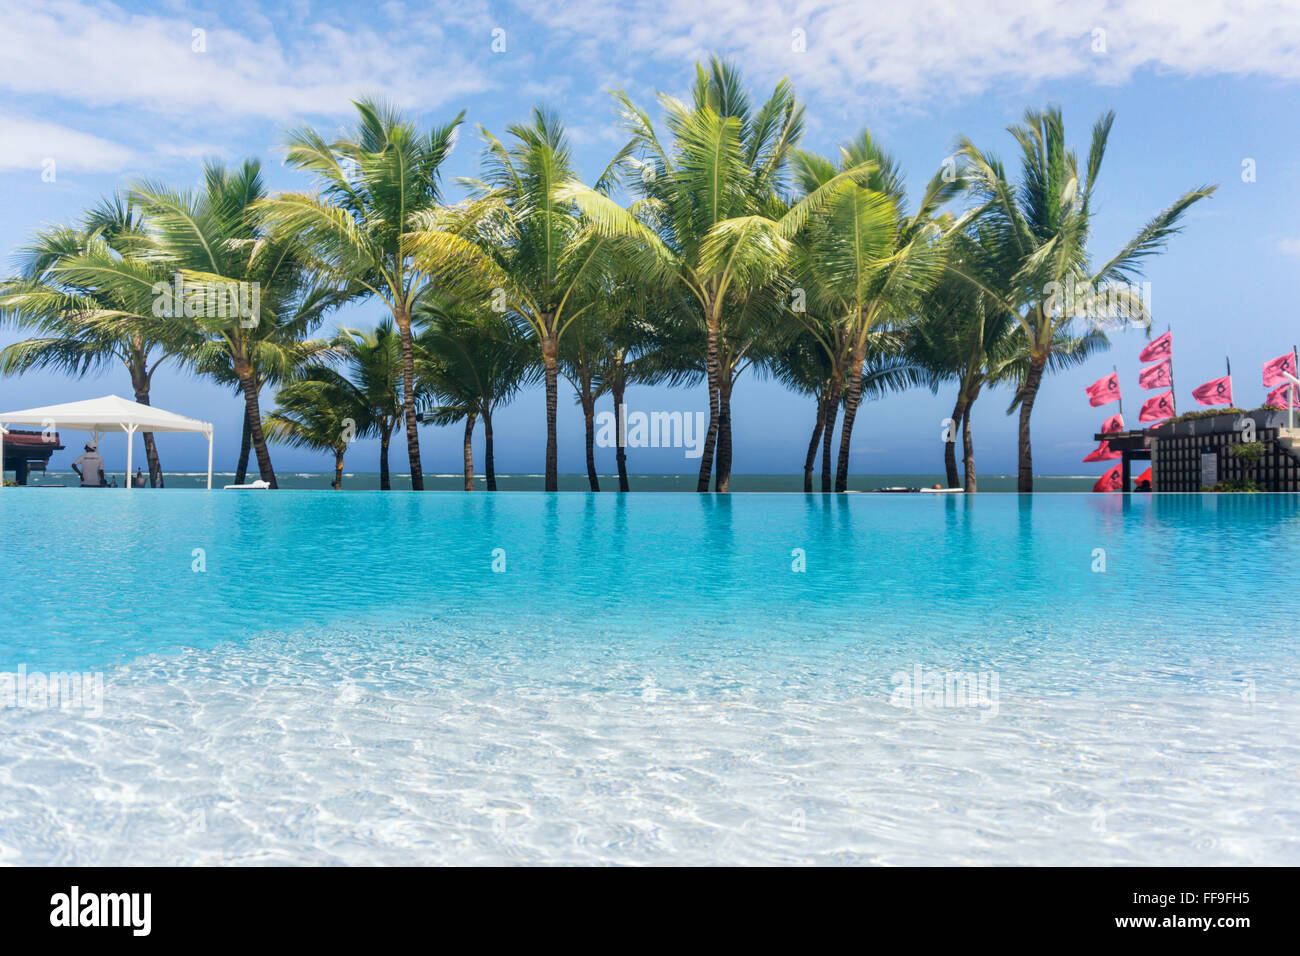 Piscina, palmeras, Resort, Cabarete, República Dominicana Foto de stock